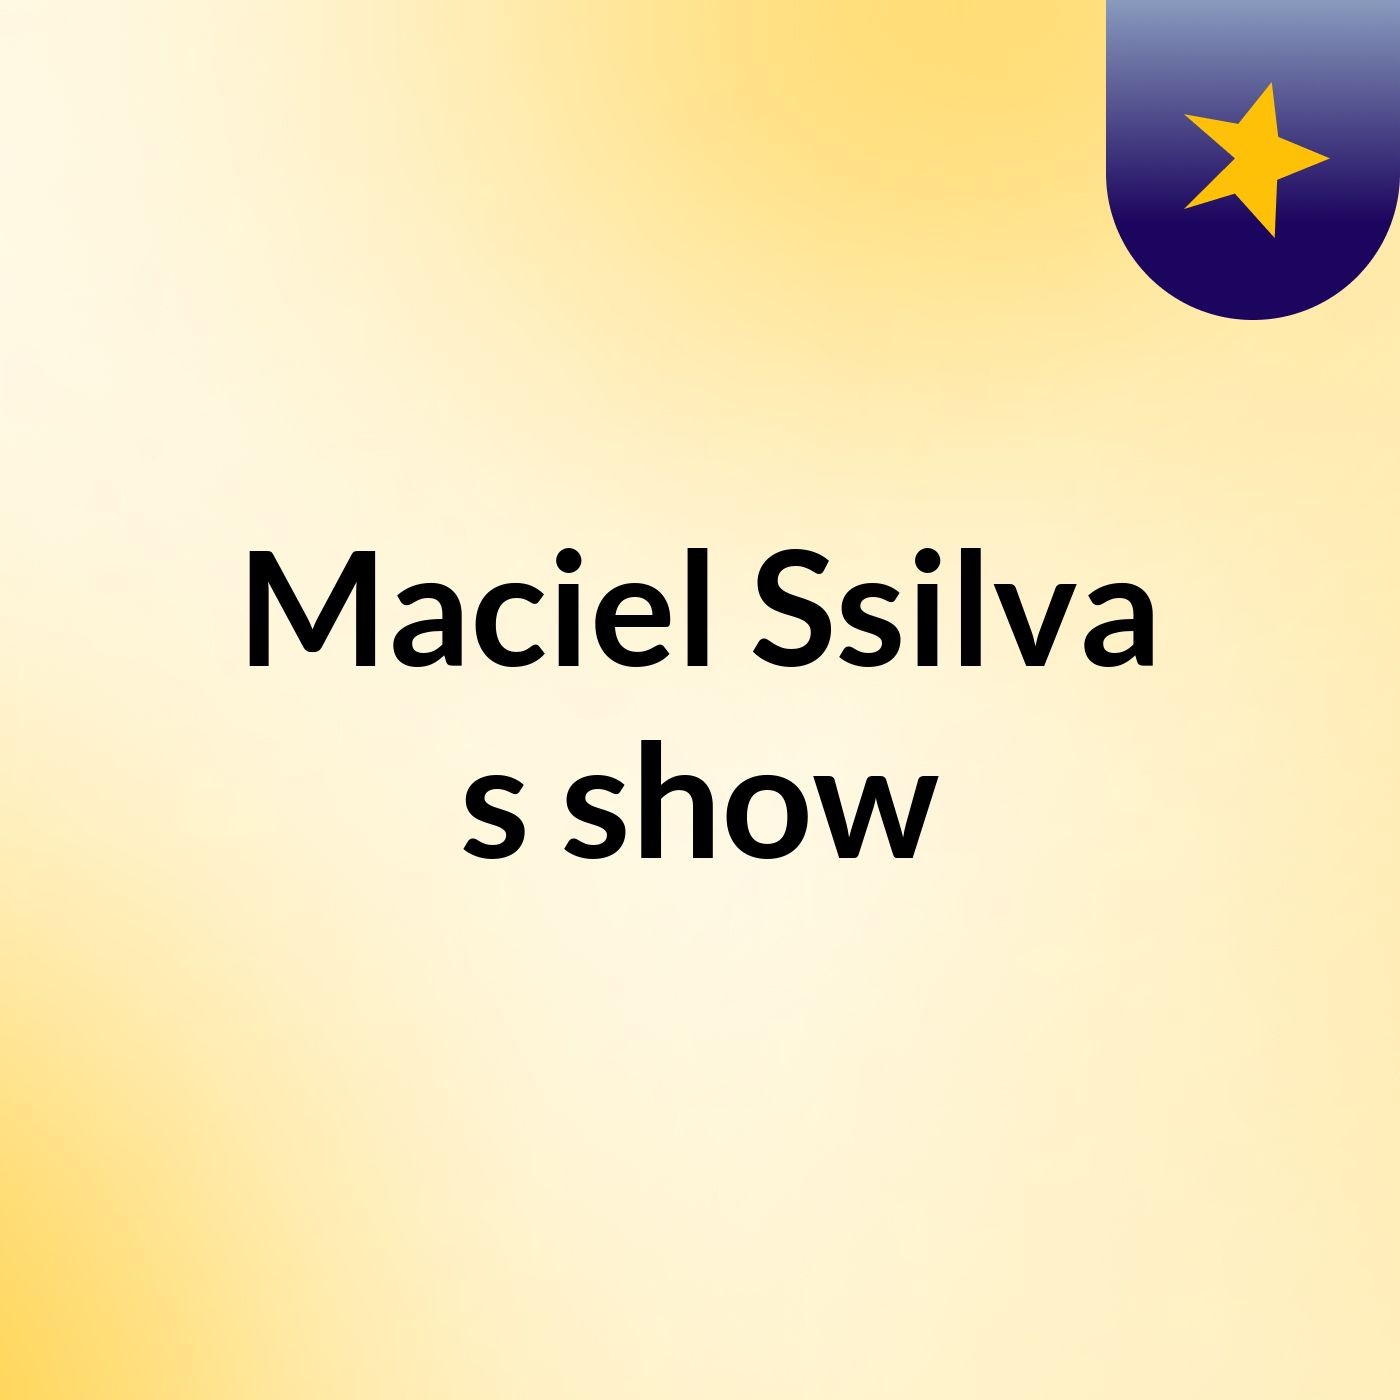 Maciel Ssilva's show